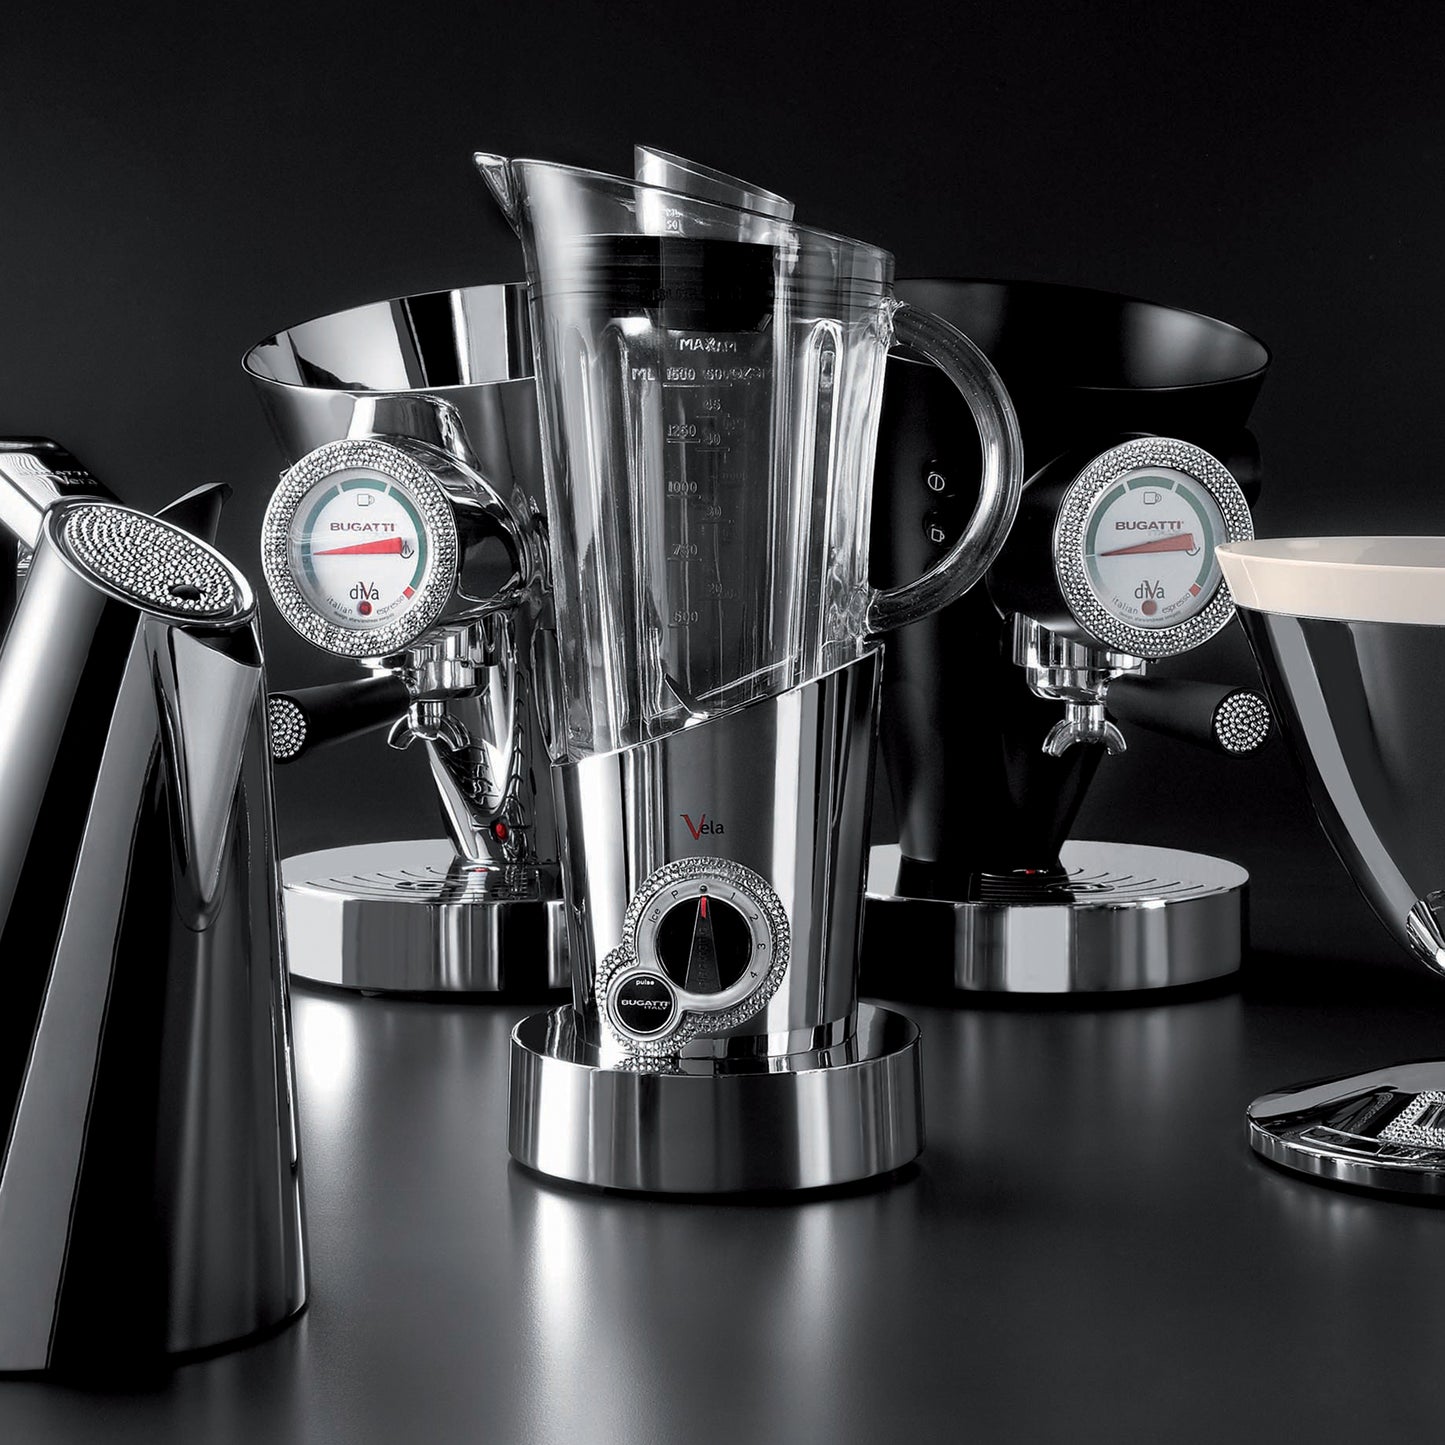 Bugatti Italy Diva Light Details Espresso Coffee Machine - Black